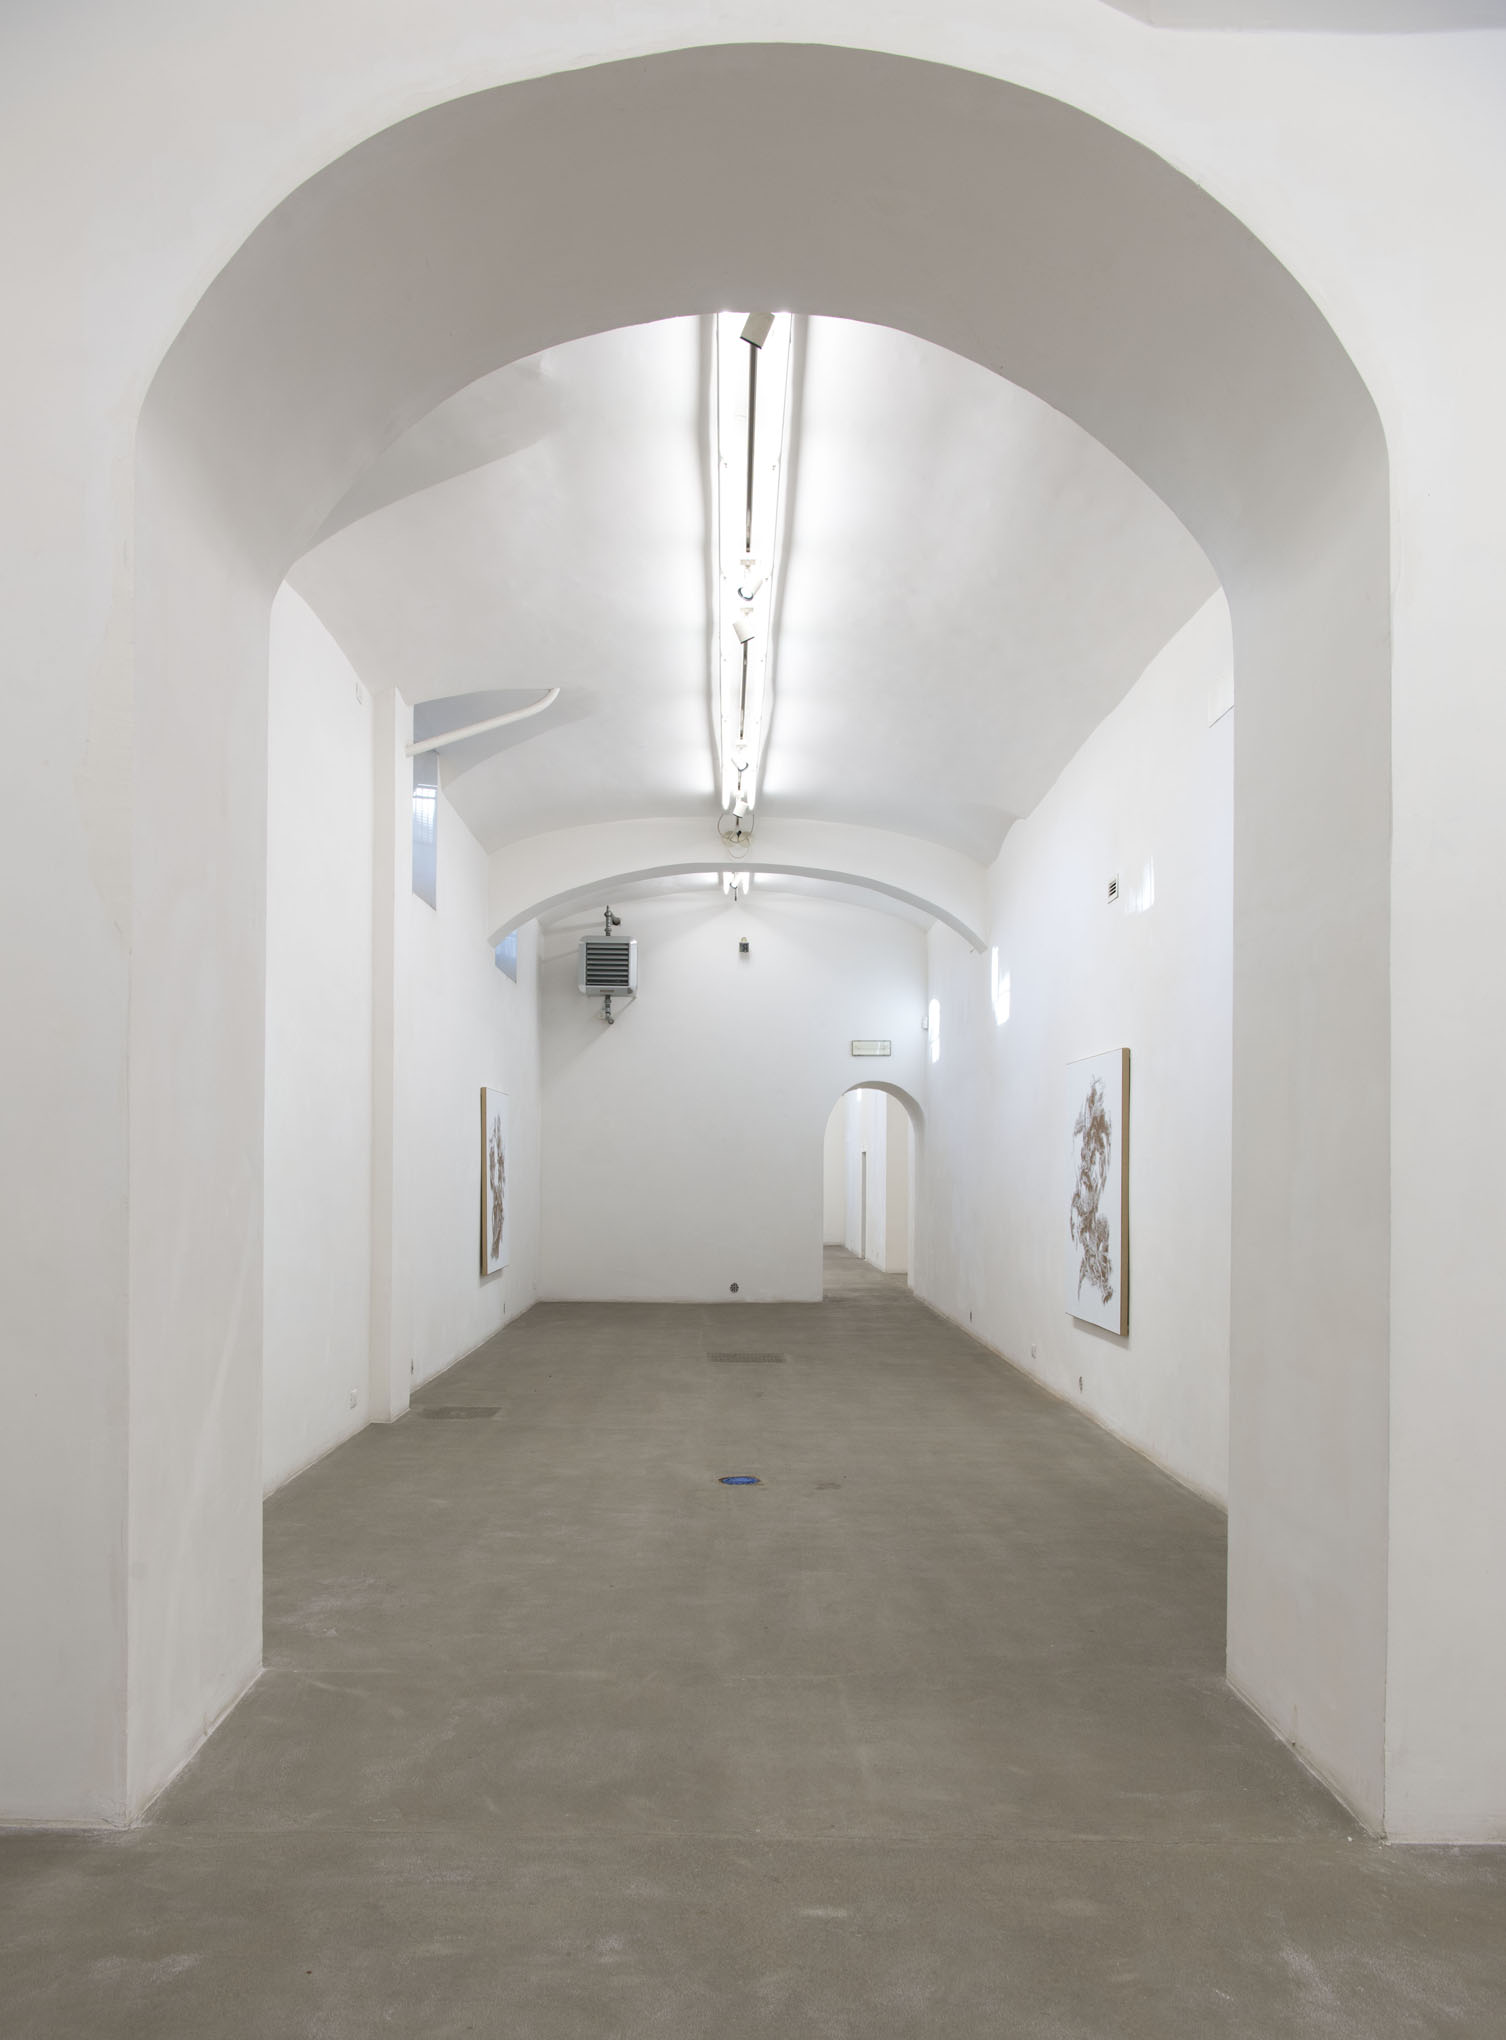 N. Dash. Installation view at Fondazione Giulani, photo by Giorgio Benni